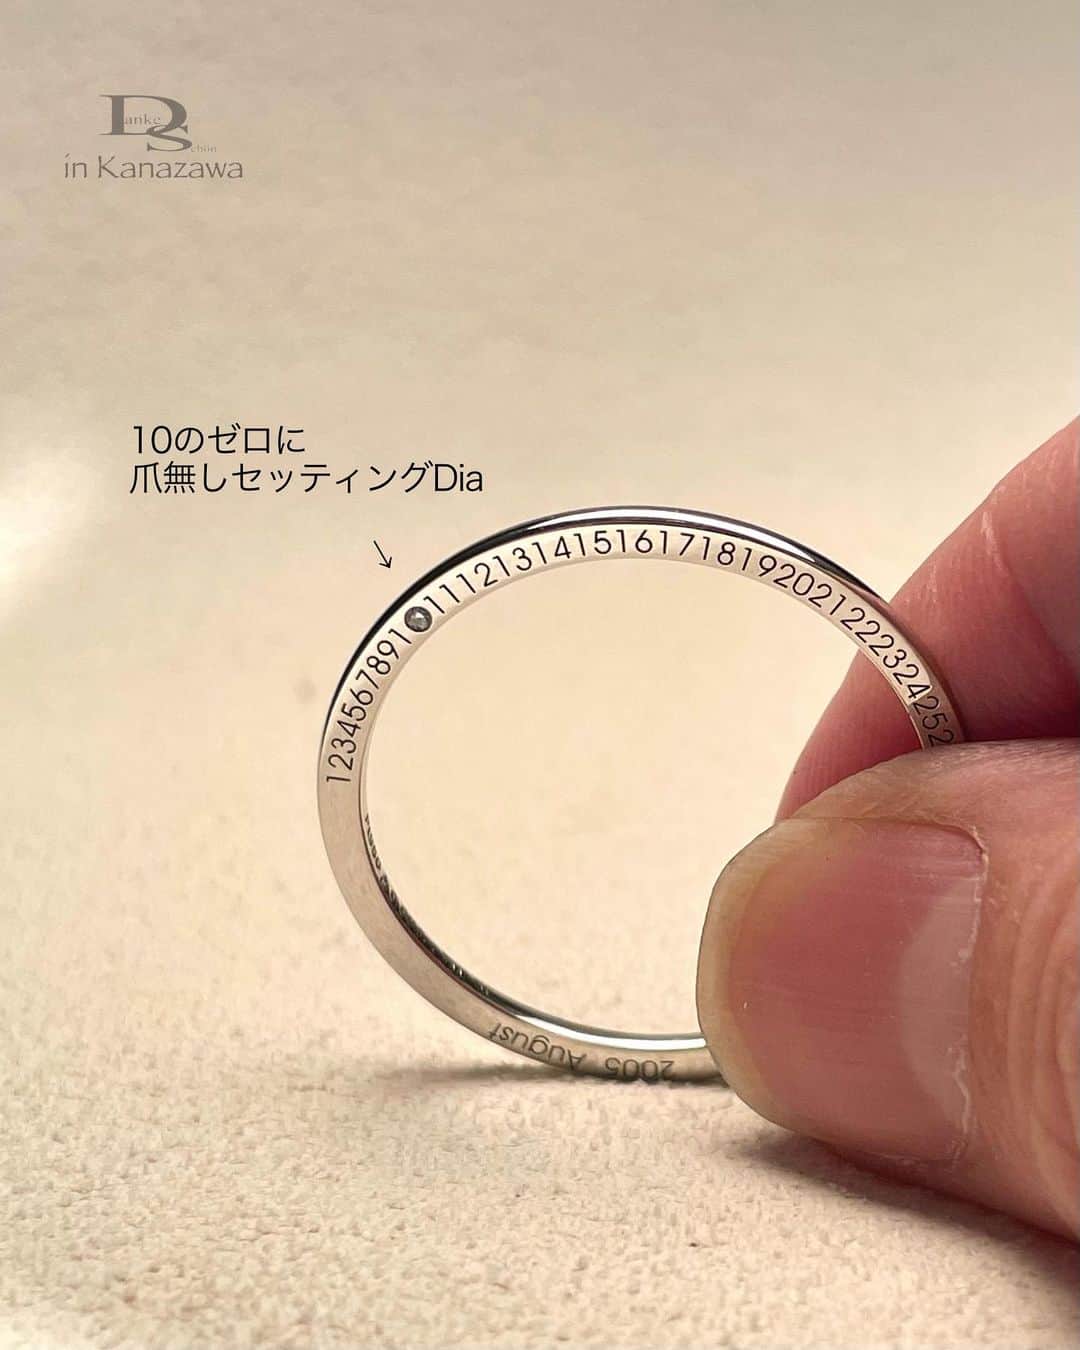 Danke schön ダンケ 金沢 結婚指輪 鍛造さんのインスタグラム写真 - (Danke schön ダンケ 金沢 結婚指輪 鍛造Instagram)「・ ・ ハイ🙌🏻 今日のバウアーさんは このテーマ↓ ・ ・ 今までも何気に 『爪無しセッティング』と 良く書いてきてますが ・ ・ 皆さん🙌🏻こんな記事を 見た事ないですか？ ・ ・ 「キャンペーン」などで 指輪の内側にDiaや誕生石などを プレゼントとの告知 ・ ・ 皆さんはその時どこに 着眼してますか？ ・ ・ その指輪の内側にDiaを留める際に 『爪留め』が多いって思った事ないですか？ ・ ・ 🇩🇪クリスチャンバウアーは 内側にDiaを留める時には『爪無し』です。 ・ ・ しかも 内側だけでなく ・ ・ 📷2.3:側面にDiaを留める時にも『爪無し』です。 ※モデルによってはデザインとして爪留めを 施しているものもあります。 ・ ・ これは如何に指輪の 「真円のKeep」が高くないと 爪無しセッティングは出来そうで出来ない🤔 ・ ・ 指輪をはめれば モノに あてたり ぶつけたり ・ ・ あてていないようで あててますから ・ ・ 📷4:指輪は皆さんが思っている以上に日々 衝撃に耐えていかなければならない 唯一のアイテムが『指輪』 ・ ・ 「爪無し」でこんなに小さなDiaを この限られた面に対して留めている。 ・ ・ その甲斐あって スライスシリーズの側面刻印の際に 文字と文字の間にDiaを入れても ・ ・ どぅです😁全く不自然な感じにならずに 刻印が入っていると思いませんか？ ・ ・ 『爪無し』セッティングの 利点ではないでしょうか？ ・ ・ 指輪の基本となる 『真円のKeep力』はこんなデザインからも 感じとって頂けたら…と思っての本日の投稿でした。 ・ ・ 📷5:約18年あまり愛用している 指輪の内側の記念刻印のDiaも 今も尚！バッチリ留まってます（参考までに…📷） ・ ・ 今日は結構、地味はお話しですが🤭 表面的なデザインばかりを見るのではなく こう言う細部もちょっと意識して見てみるのも 結構楽しいものですよ。 ・ ・ ・ ・ ・  鍛造削り出し 🇩🇪クリスチャンバウアー 専門店 ・ ・ ワンランク上をいくノウハウの クリスチャンバウアーの選び方なら 『Danke schön 』 ・ ・ ・ —— 𝐃𝐚𝐧𝐤𝐞——— ▪︎ Instagramプロフィール 🔜 @danke2005  —————————————————————𝐒𝐜𝐡⍥𝐧——— ・ ・ #クリスチャンバウアー金沢 #鍛造指輪 #鍛造リング #結婚指輪 #結婚指輪オーダー #切削加工 #結婚指輪探し #結婚指輪選び #指輪探し #指輪選び #マリッジリング #結婚指輪金沢 #金沢結婚指輪 #セカンドリング #結婚指輪買い替え #地金屋鍛造 #ブライダルリング #結婚記念日 #ベビーリング #ドイツリング #自分へのご褒美   ------------------------------------------✈︎ ---------  鍛造削り出し 🇩🇪クリスチャンバウアー 専門店 『𝐃𝐚𝐧𝐤𝐞 𝐬𝐜𝐡⍥𝐧』 ・ • 営業時間 am11:00〜pm9:00 • 定休日 : 木曜日 • 駐車場 : 店舗前OK • ご予約 : 優先 ・ ・ ——𝐃𝐚𝐧𝐤𝐞——————————————— ▪︎トップページ 🔜 @danke2005 ———————————————————-𝐒𝐜𝐡⍥𝐧—————」4月17日 18時45分 - danke2005